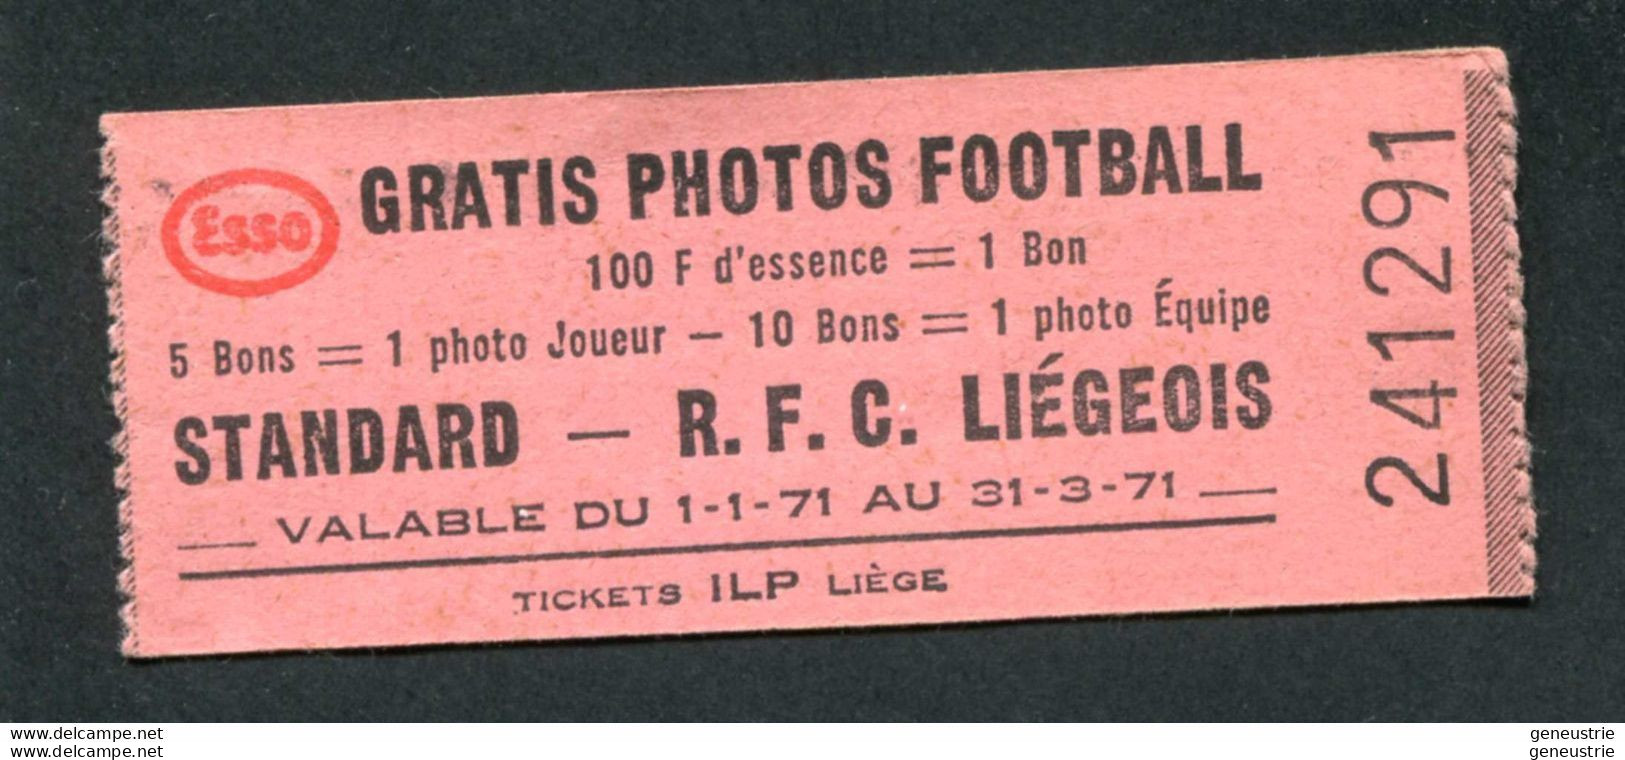 Jeton-carton De Nécessité - Ticket-prime 1971 "Esso Gratis Photos Football - R.F.C. Liégeois - ILP à Liège" - Monetary / Of Necessity